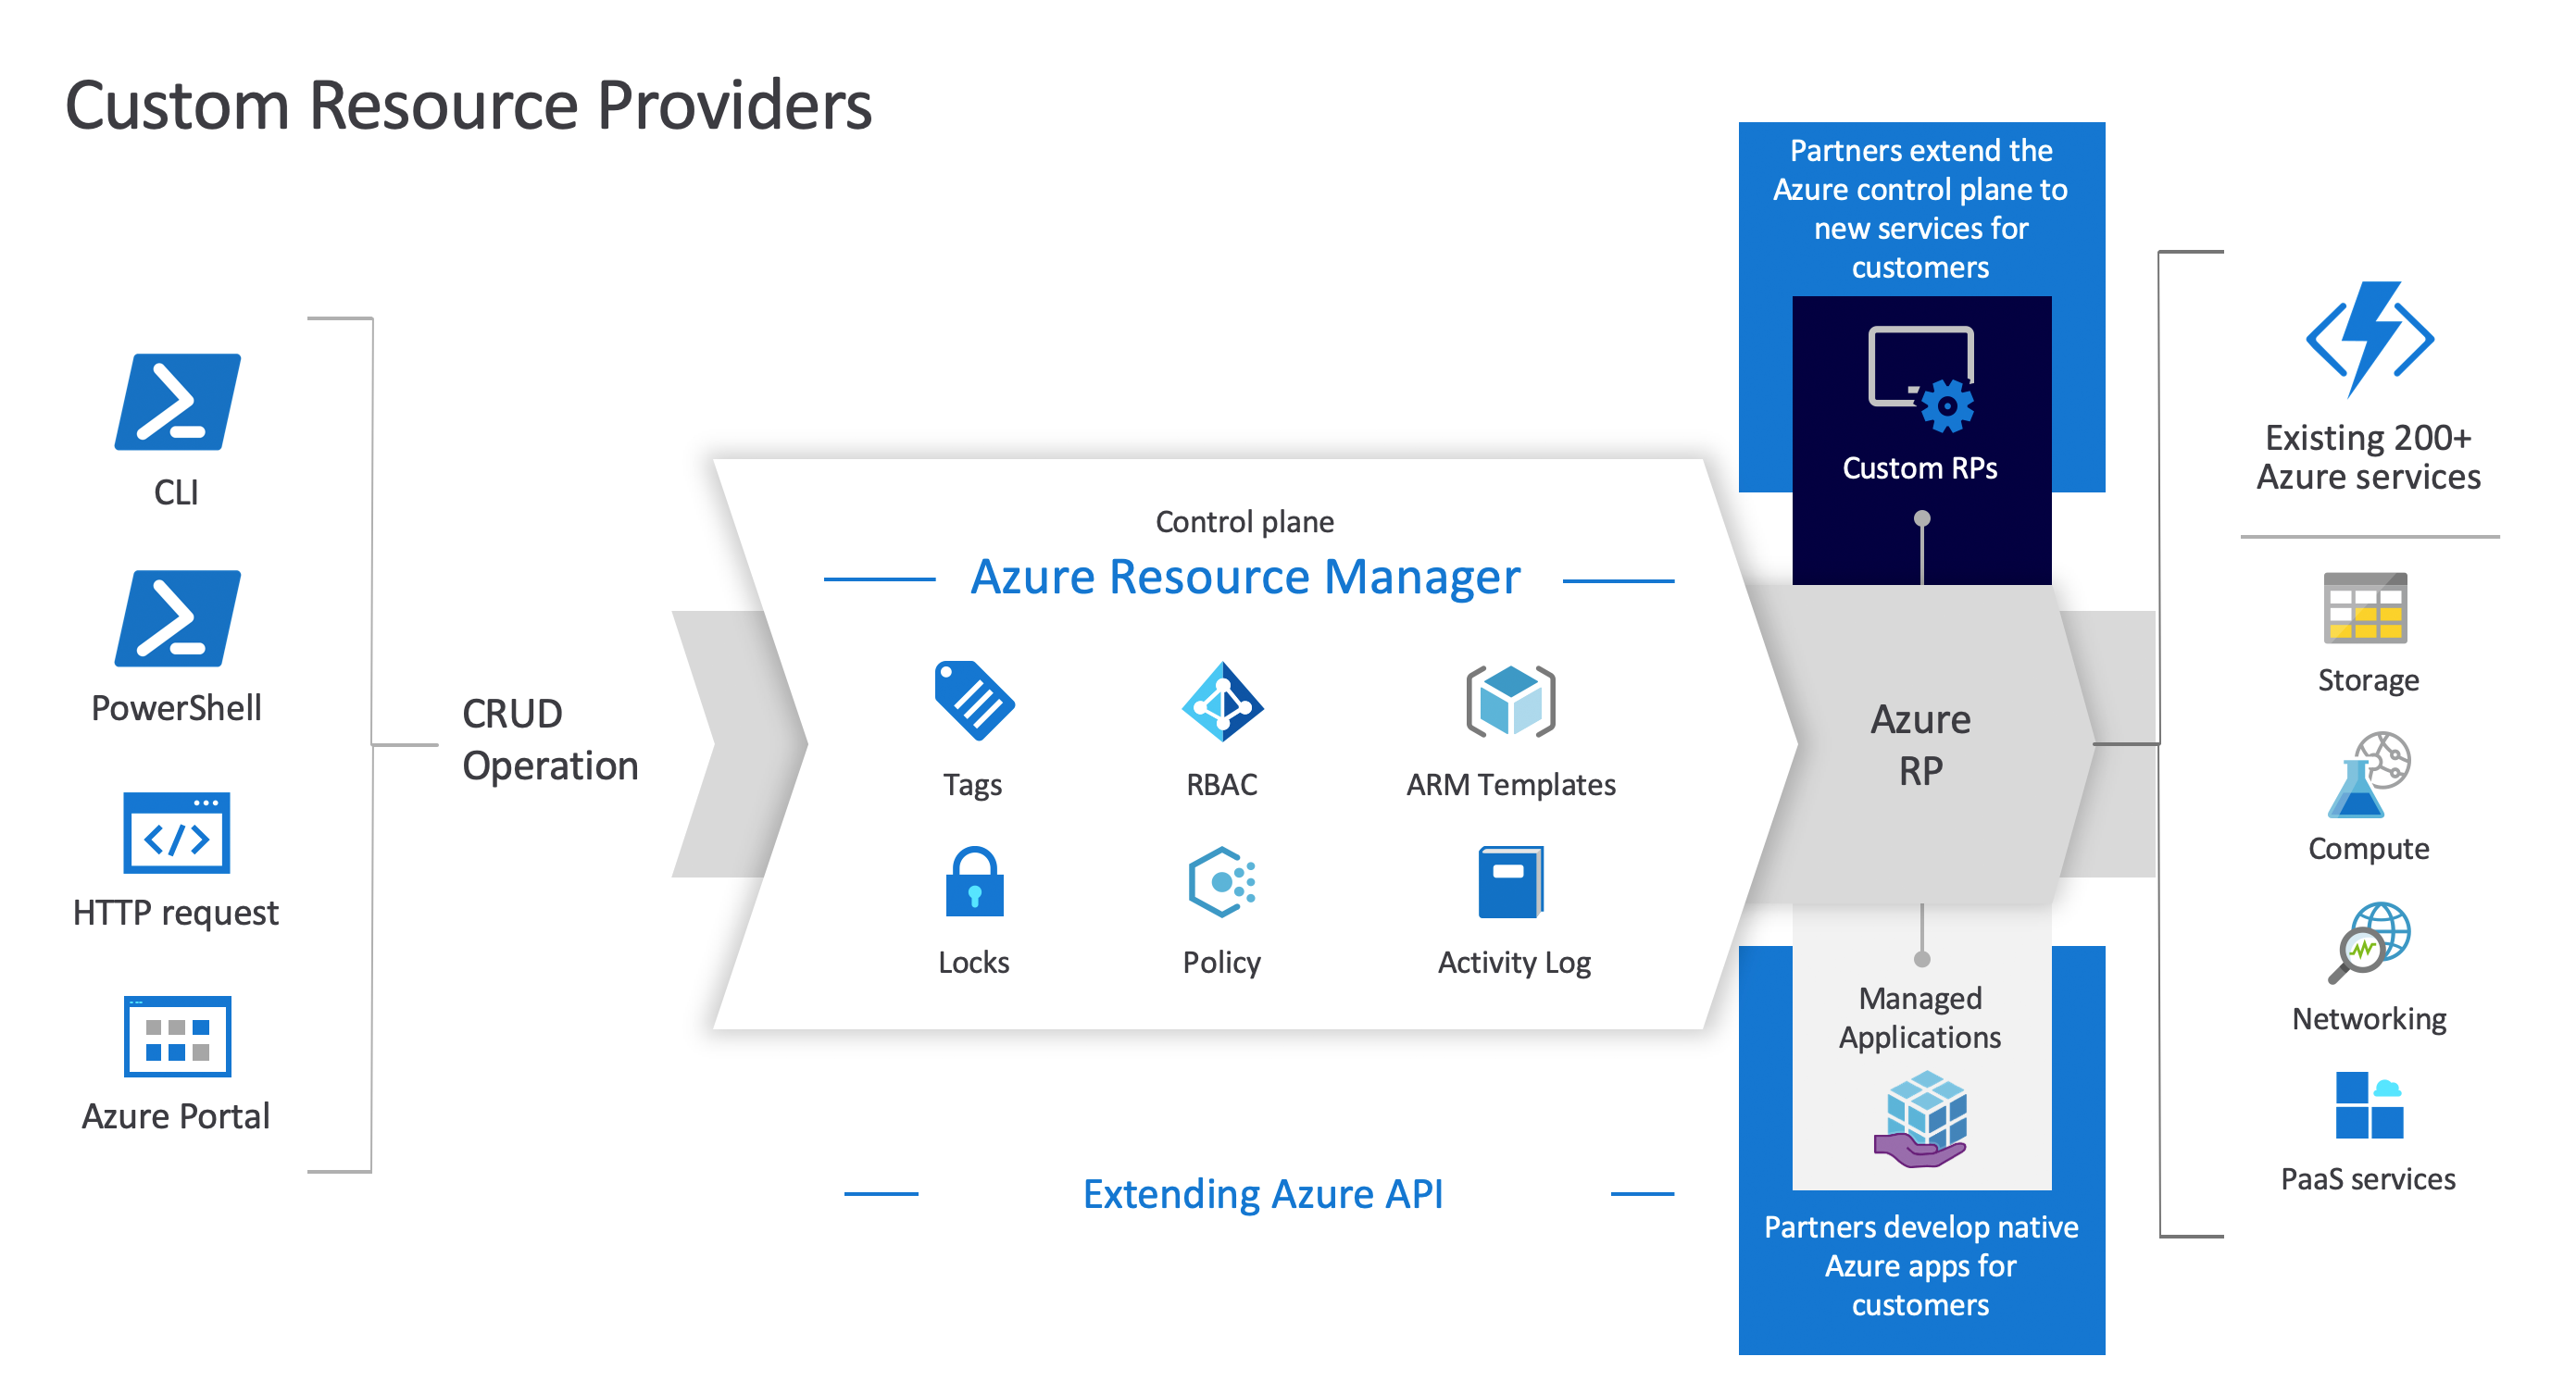 Diagrama de Fornecedores de Recursos Personalizados do Azure, apresentando a relação entre Resource Manager do Azure, fornecedores de recursos personalizados e recursos.